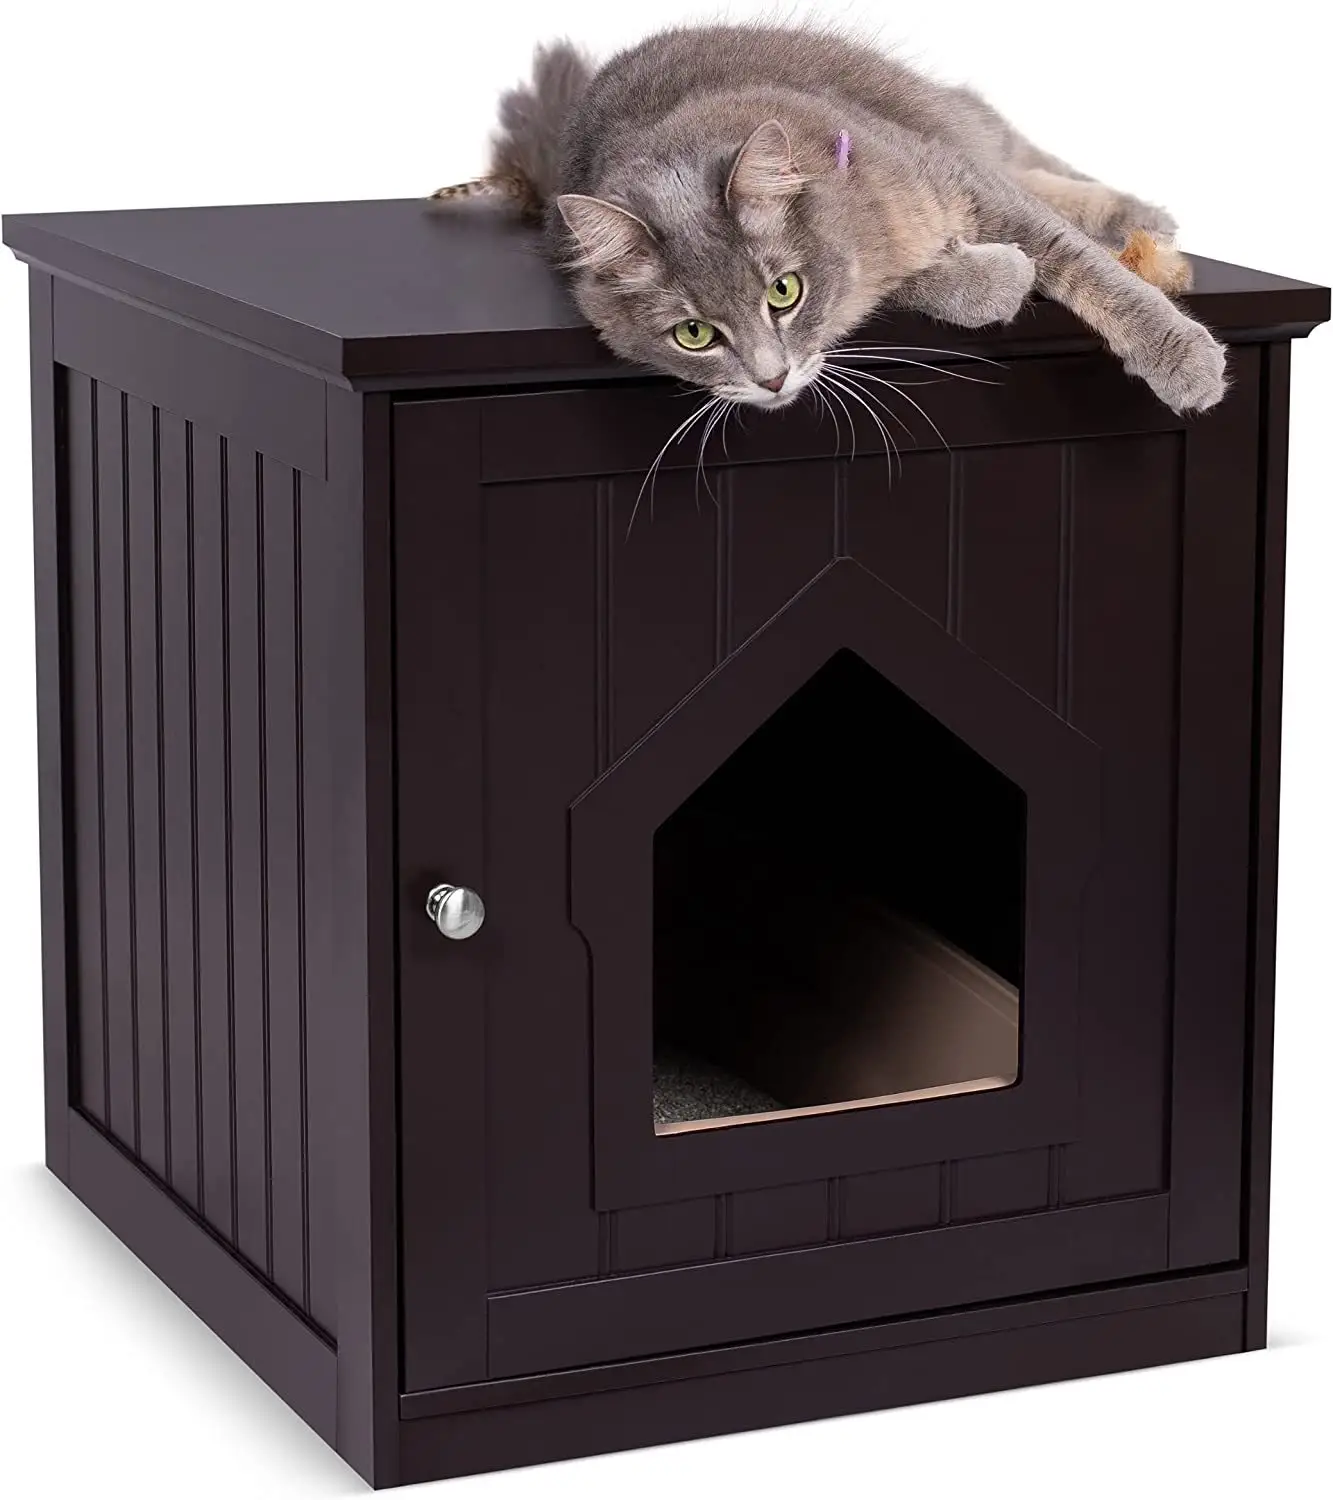 Casa de gato y mesa lateral para decoración del hogar, cubierta de mesita de noche, caja de arena para gatos